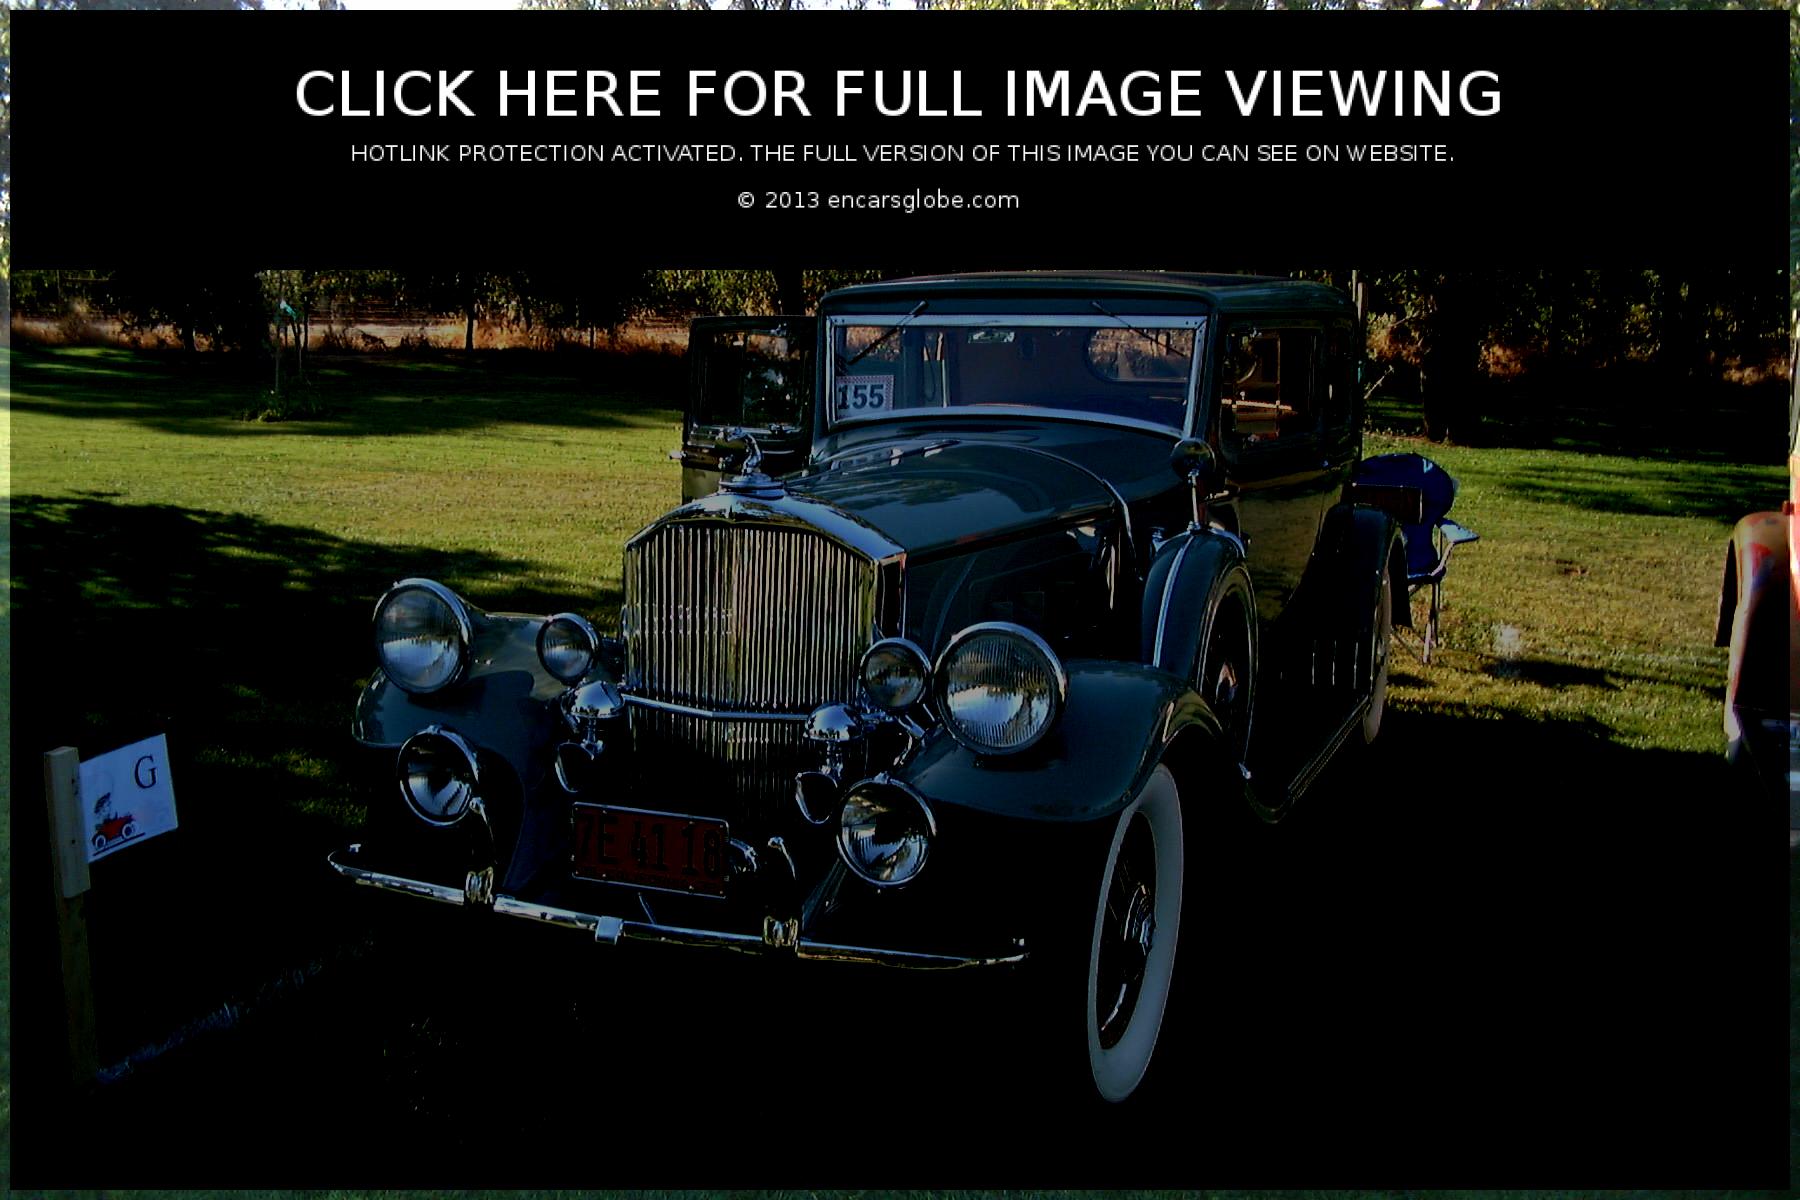 Galerie de photos de pick-up Studebaker 2R6: Photo #06 sur 9, Image...